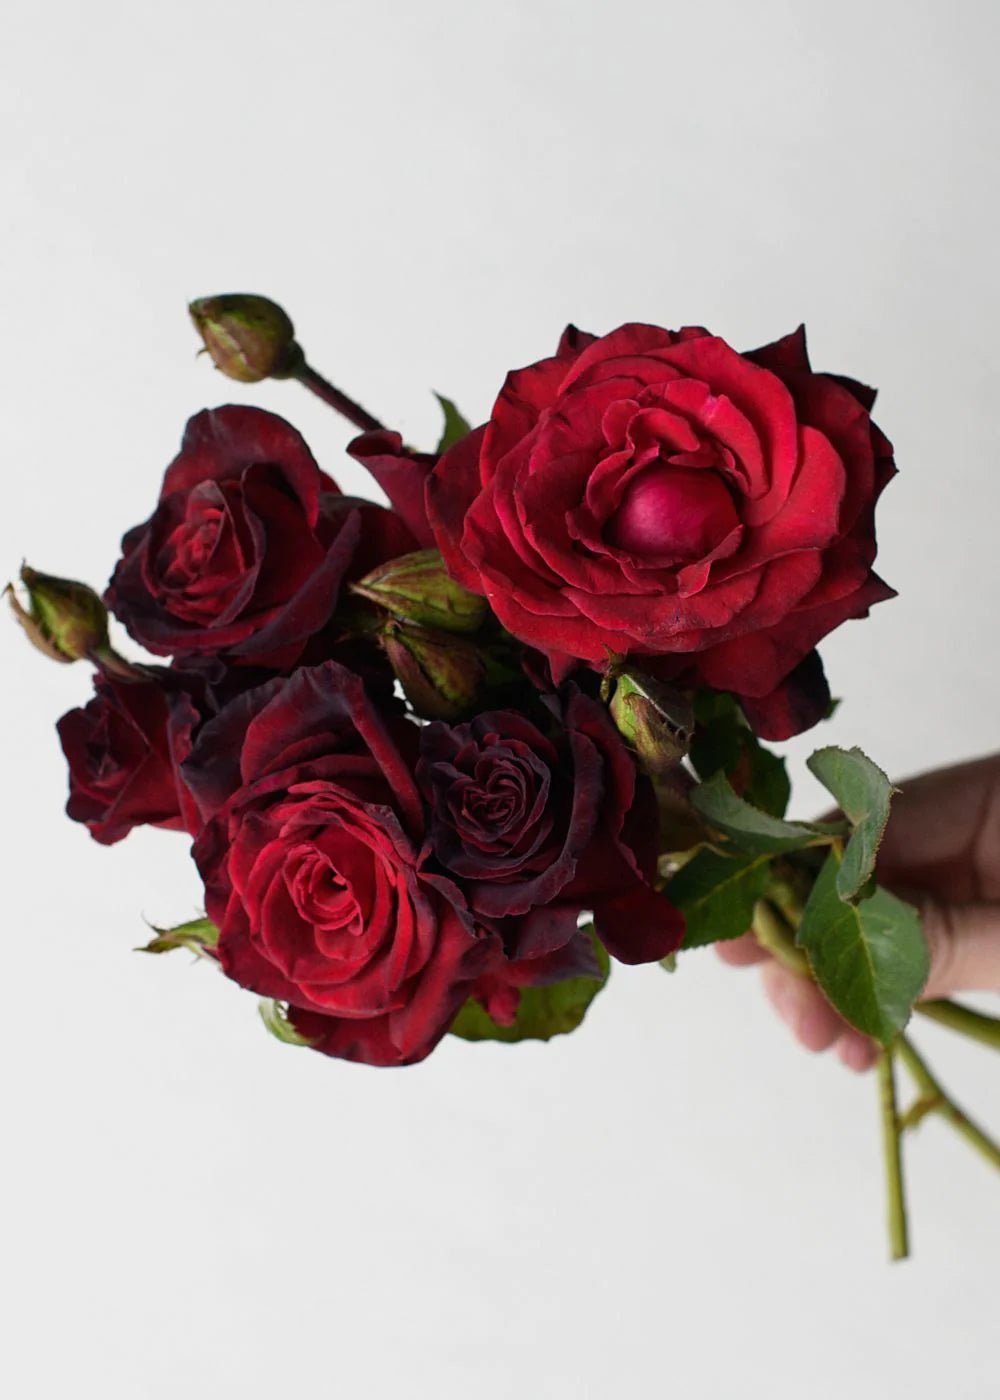 Black Baccara Rose, Dark Red Roses